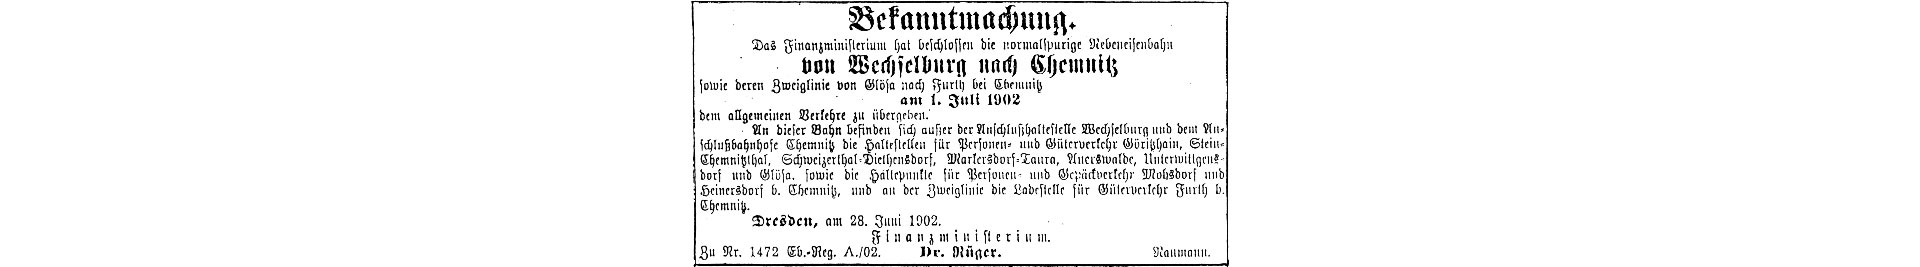 Bekanntmachung zur Übergabe der Chemnitztalbahn 1902